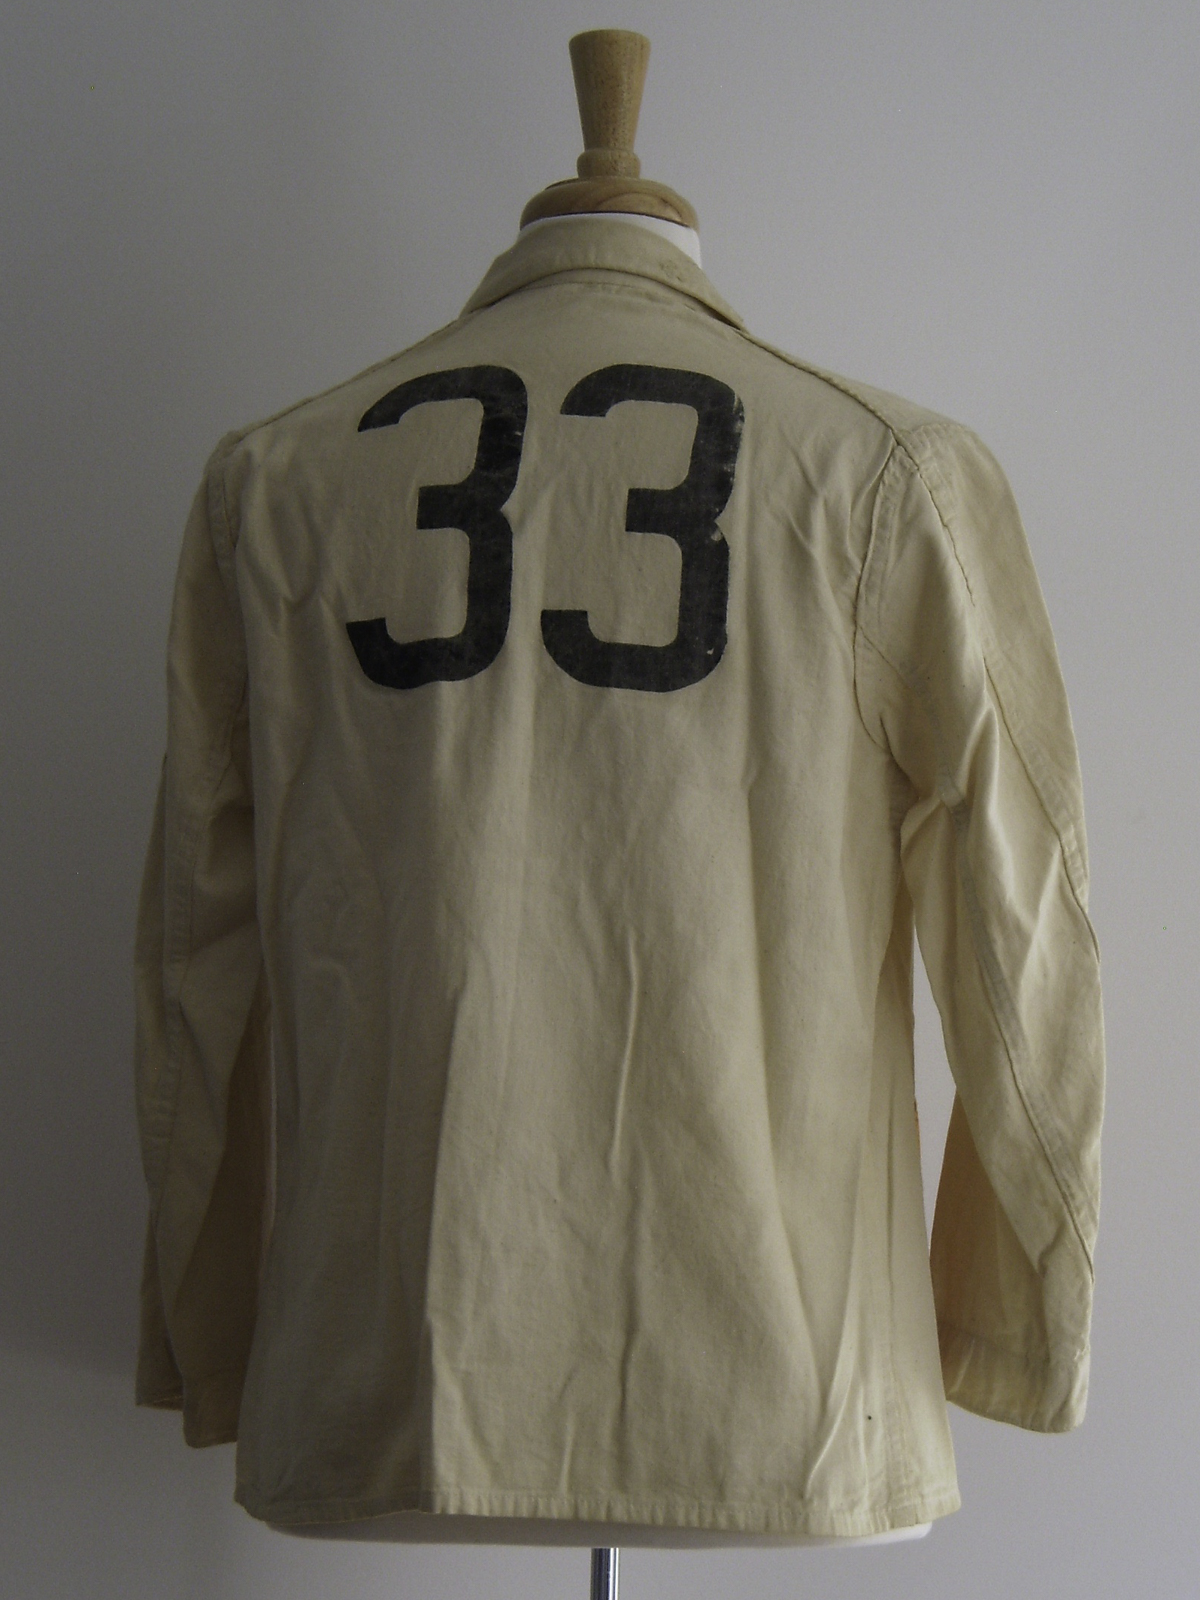 Reunion Jacket 1933 Variation 2 Rear